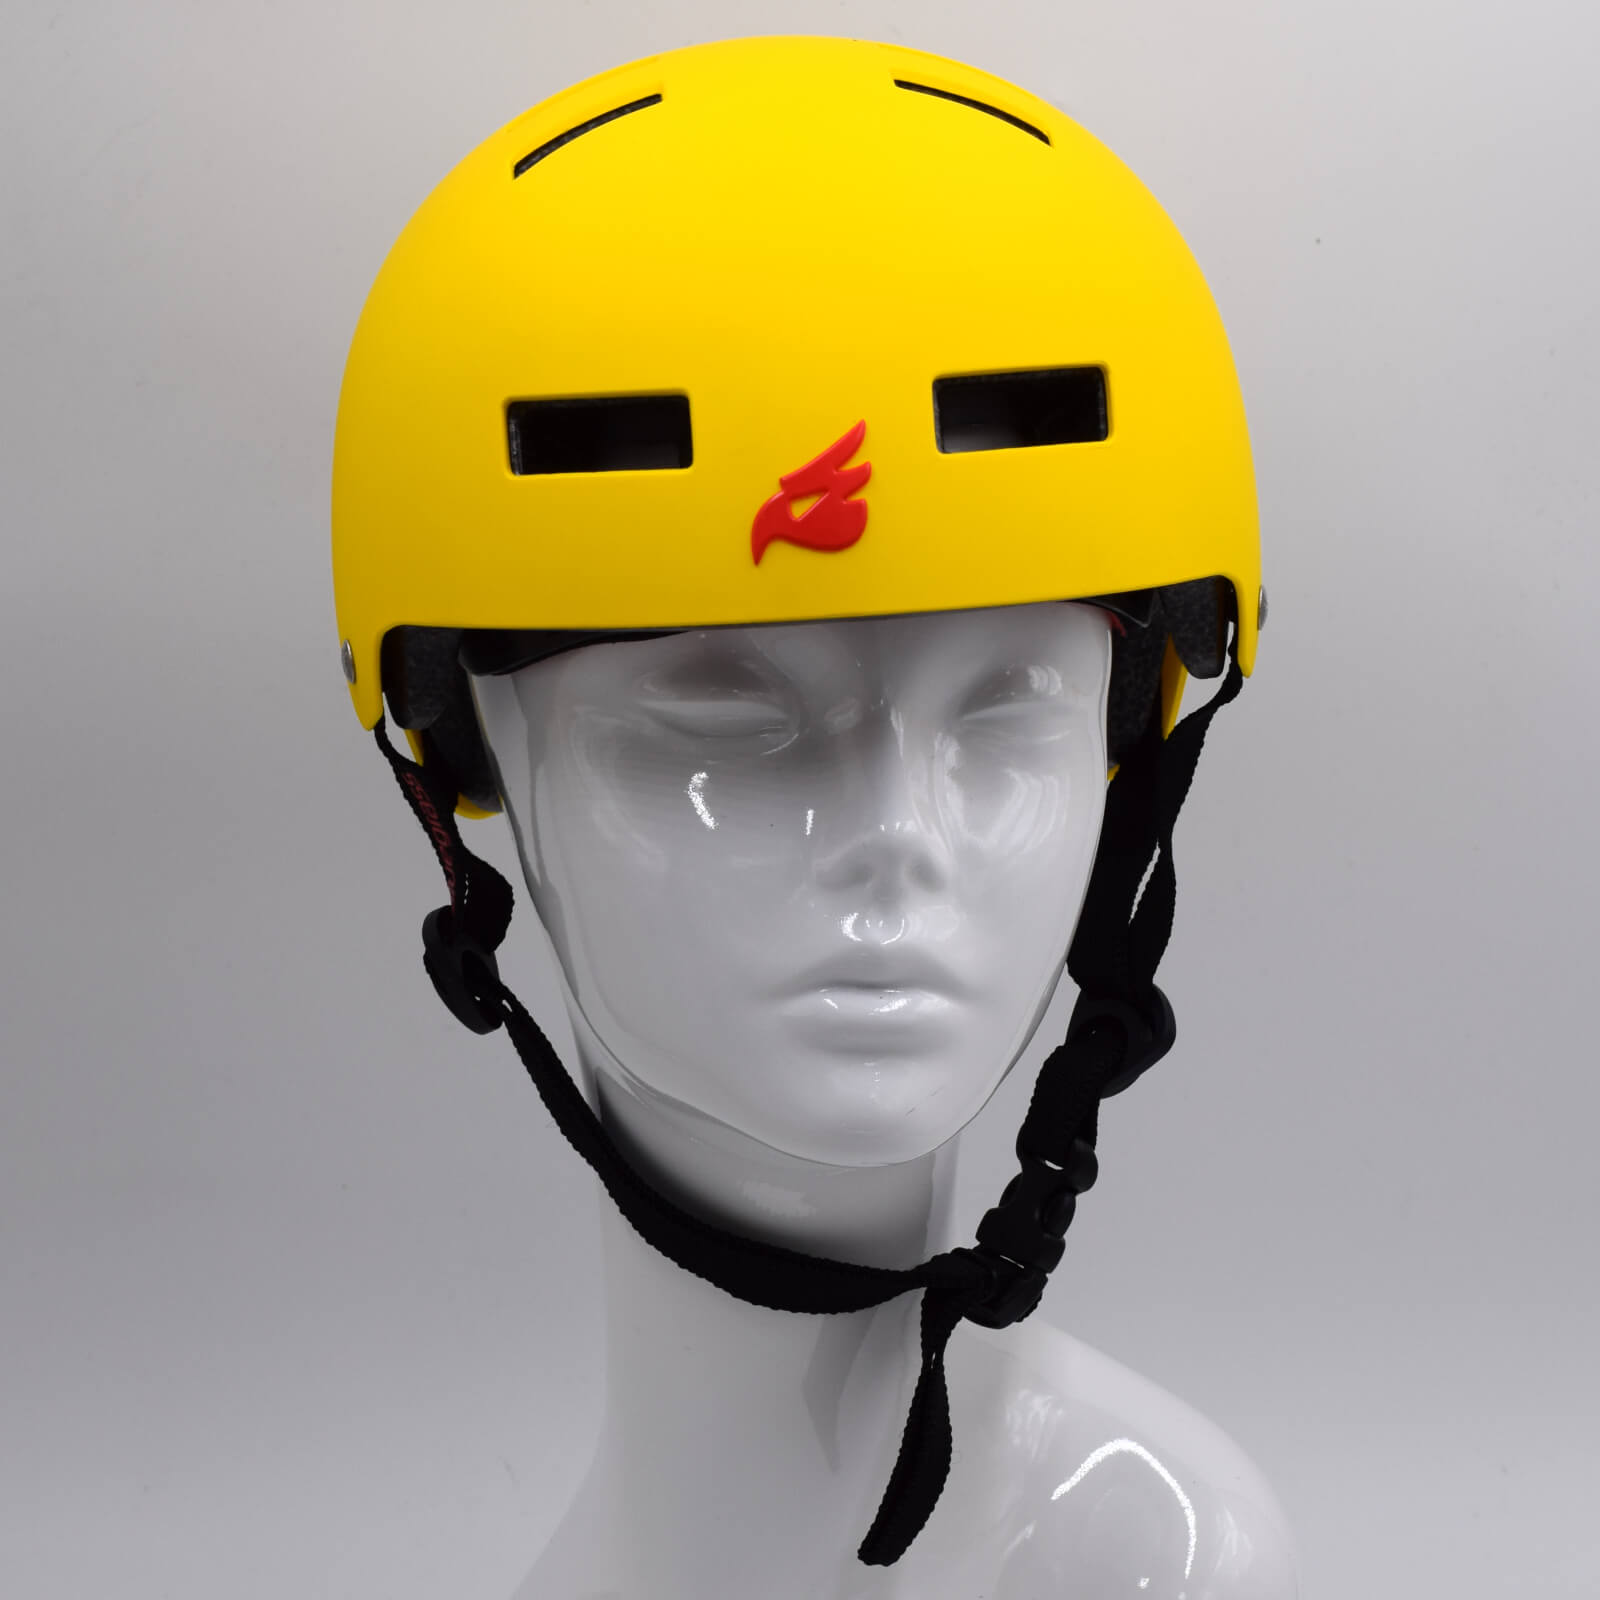 Bluegrass Super Bold BMX Dirt Lid Cycling Helmet Yellow Red Small (51-55cm)